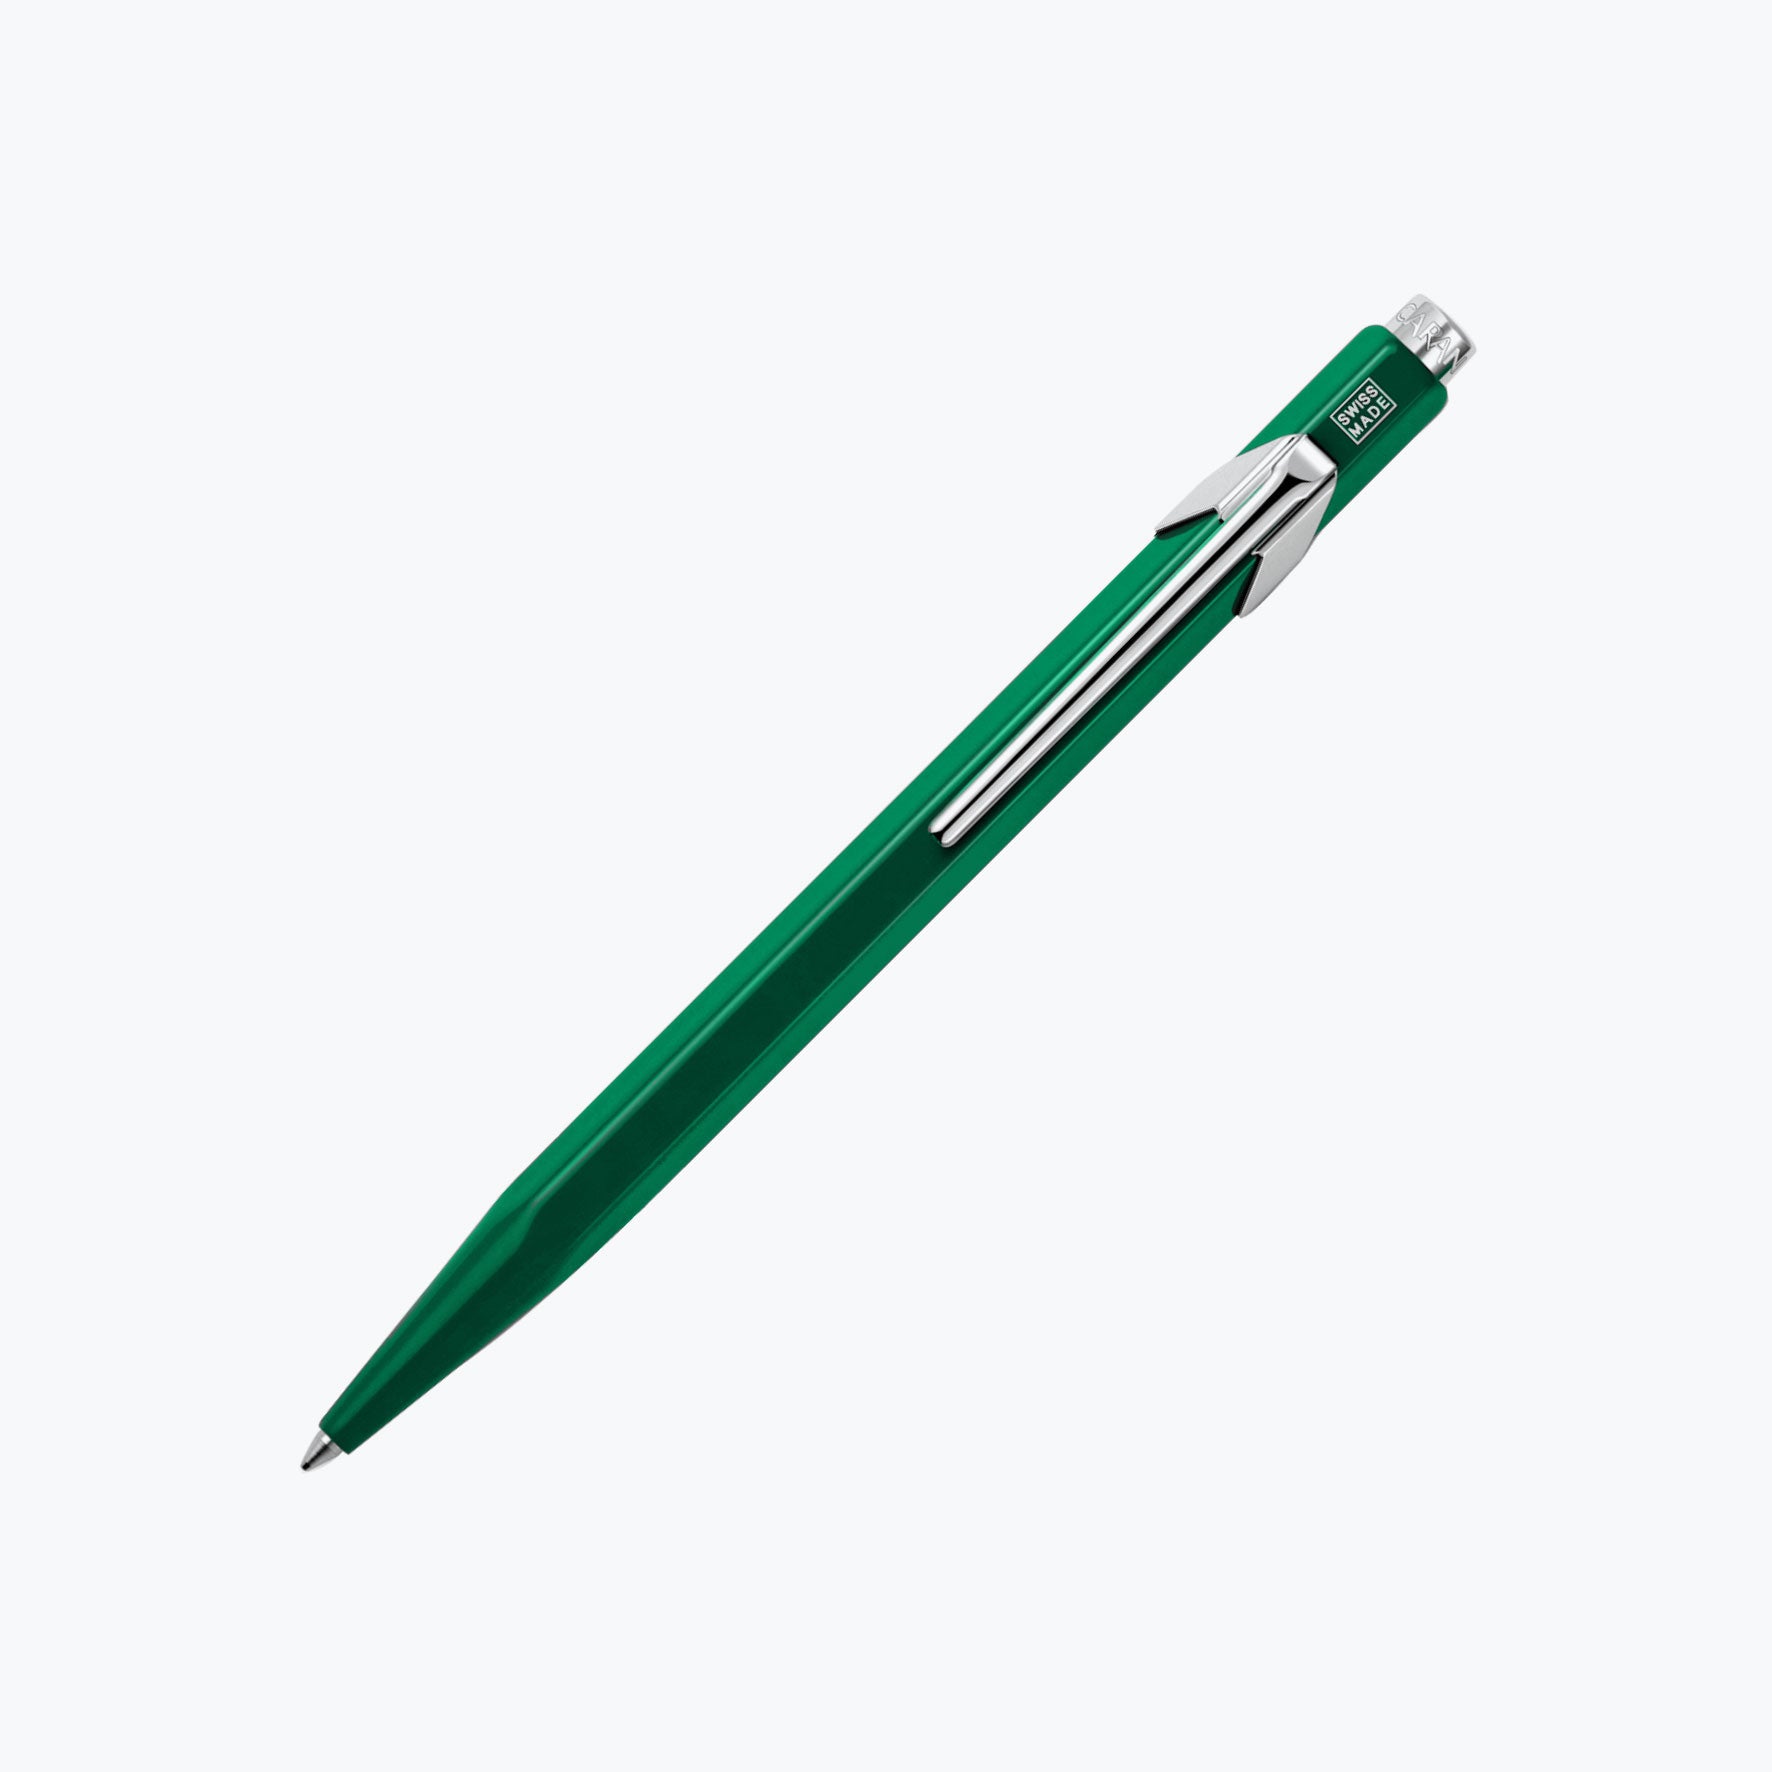 Caran d'Ache - Ballpoint Pen - 849 Classic - Green